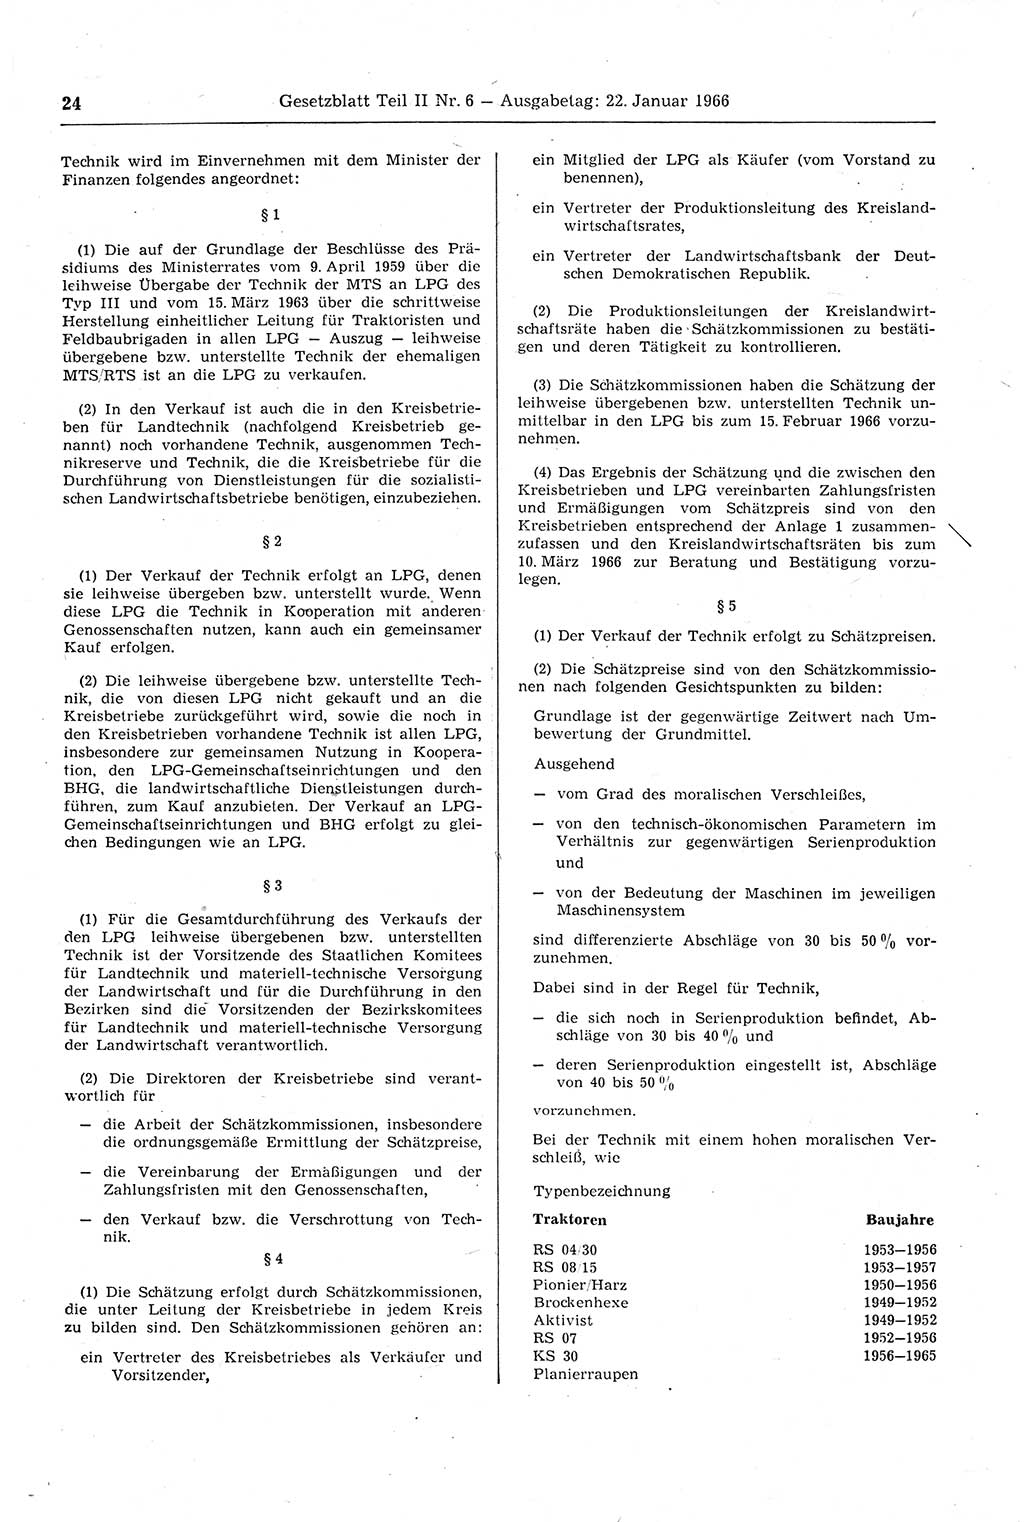 Gesetzblatt (GBl.) der Deutschen Demokratischen Republik (DDR) Teil ⅠⅠ 1966, Seite 24 (GBl. DDR ⅠⅠ 1966, S. 24)